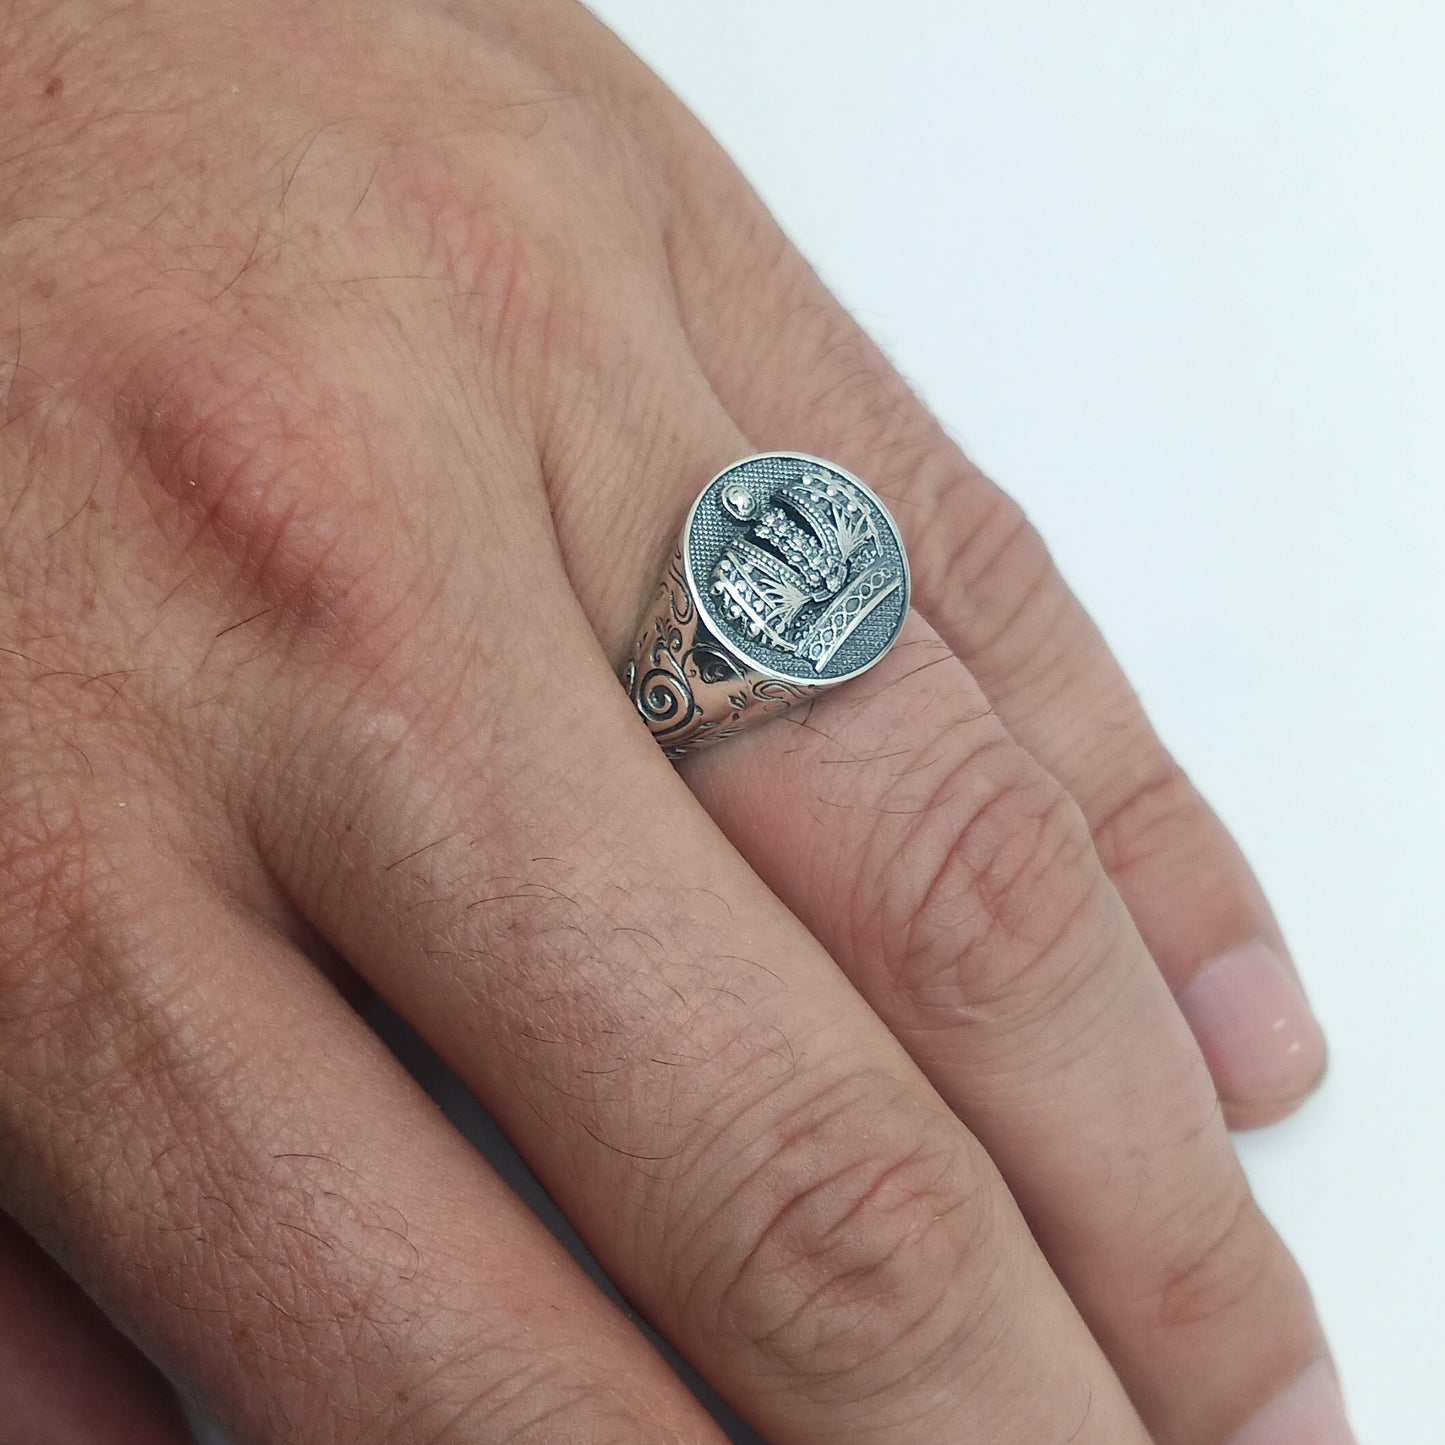 Heraldik Krone und Muster Sterling Silber 925 Herren Ring Signet